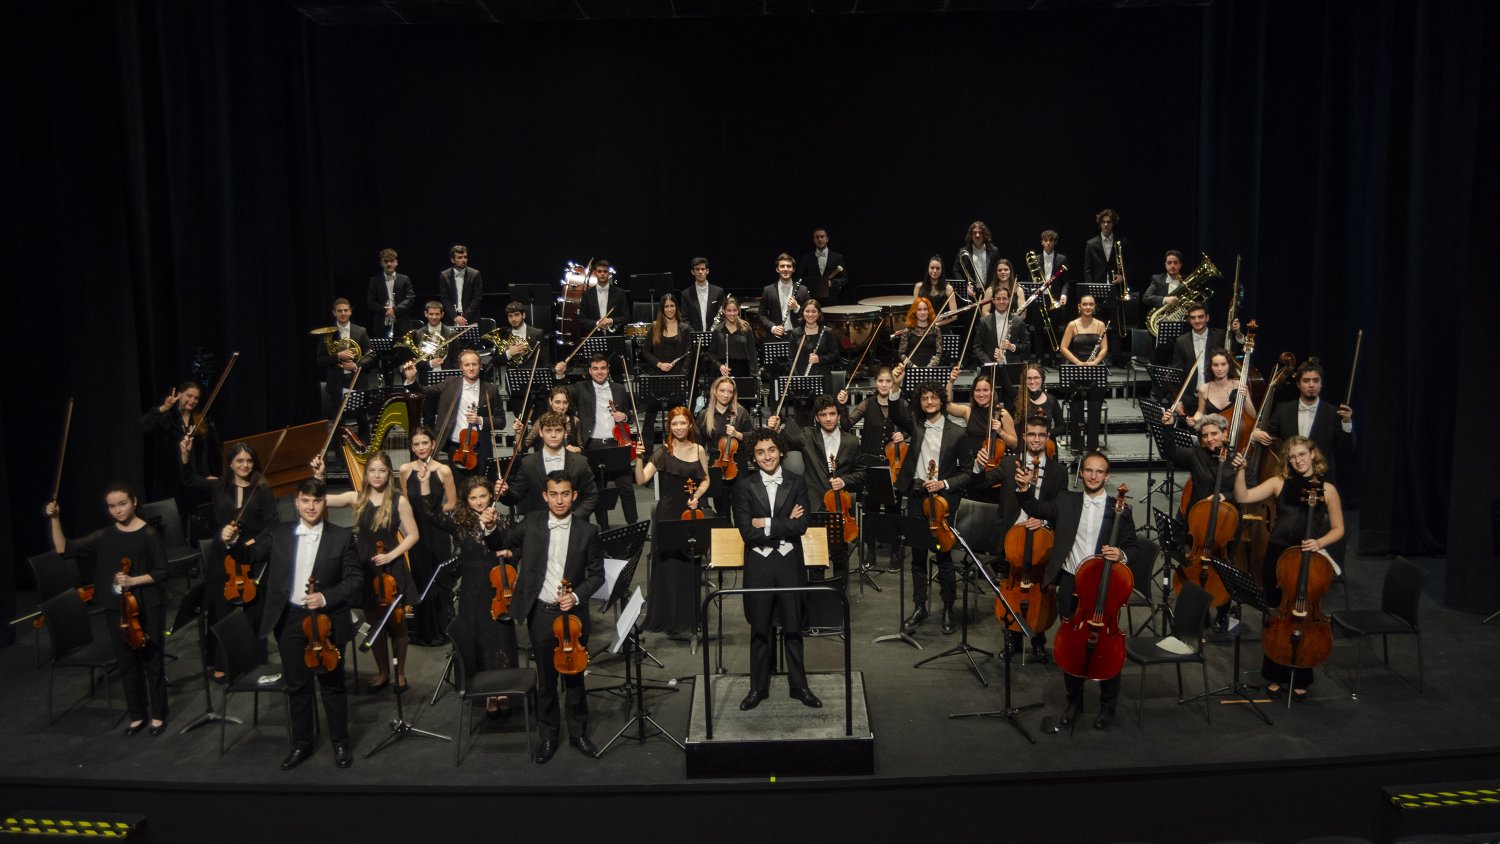 La sinfónica Orbis ofrece un concierto en colaboración con La Térmica sobre Beethoven el 29 de mayo